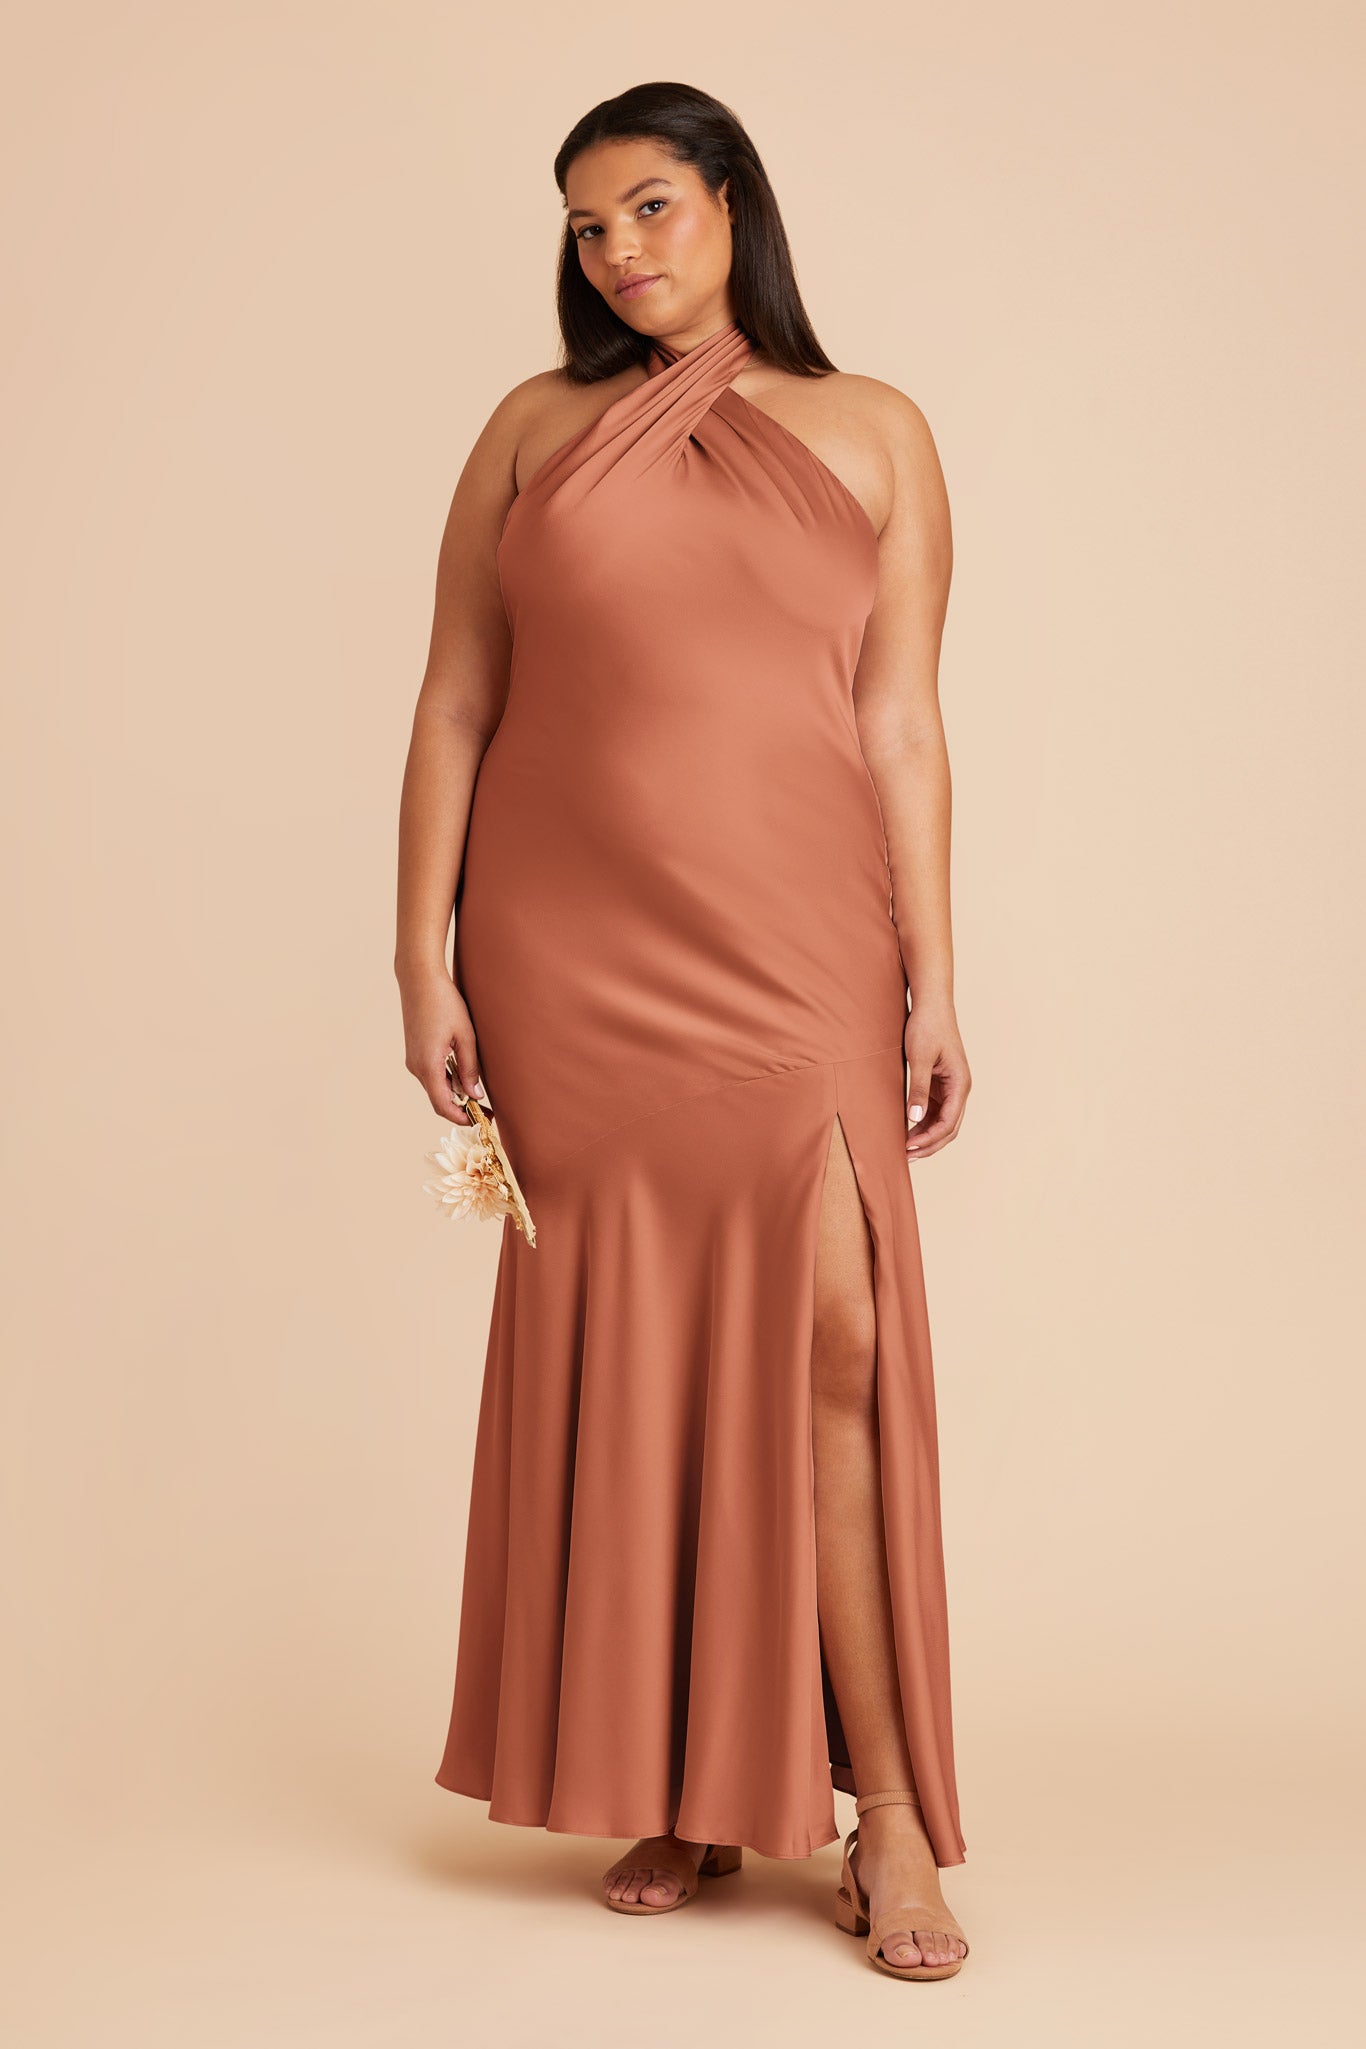 Terracotta Stephanie Matte Satin Dress by Birdy Grey